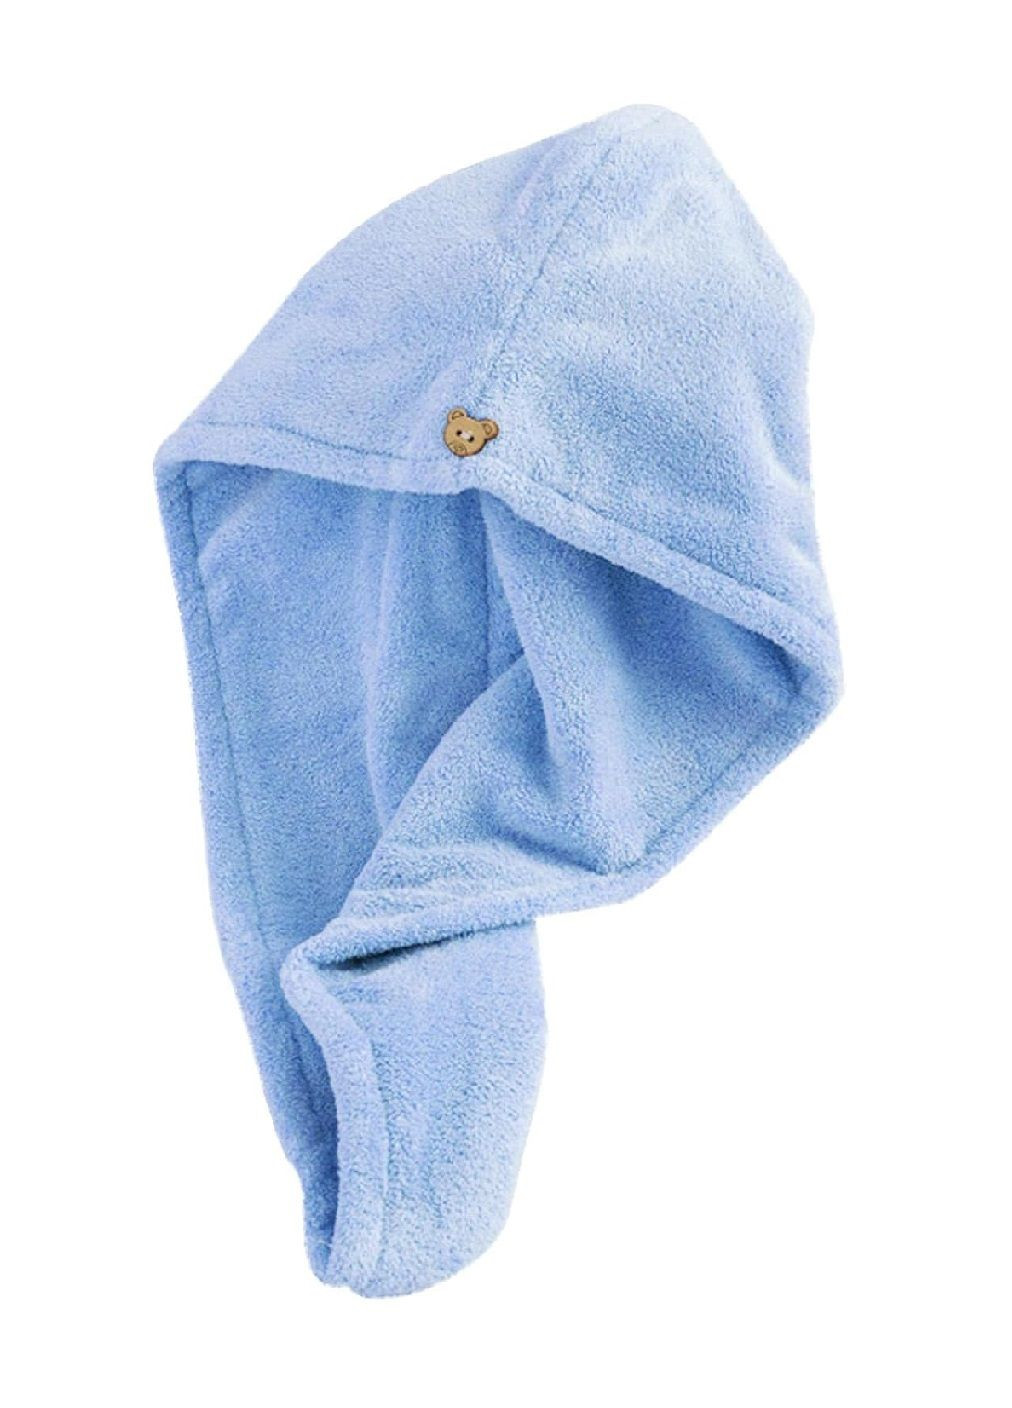 Unbranded полотенце чалма для сушки головы волос после купания в сауне душе ванной микрофибра 60х26 см (476911-prob) светло-голубое однотонный светло-голубой производство -